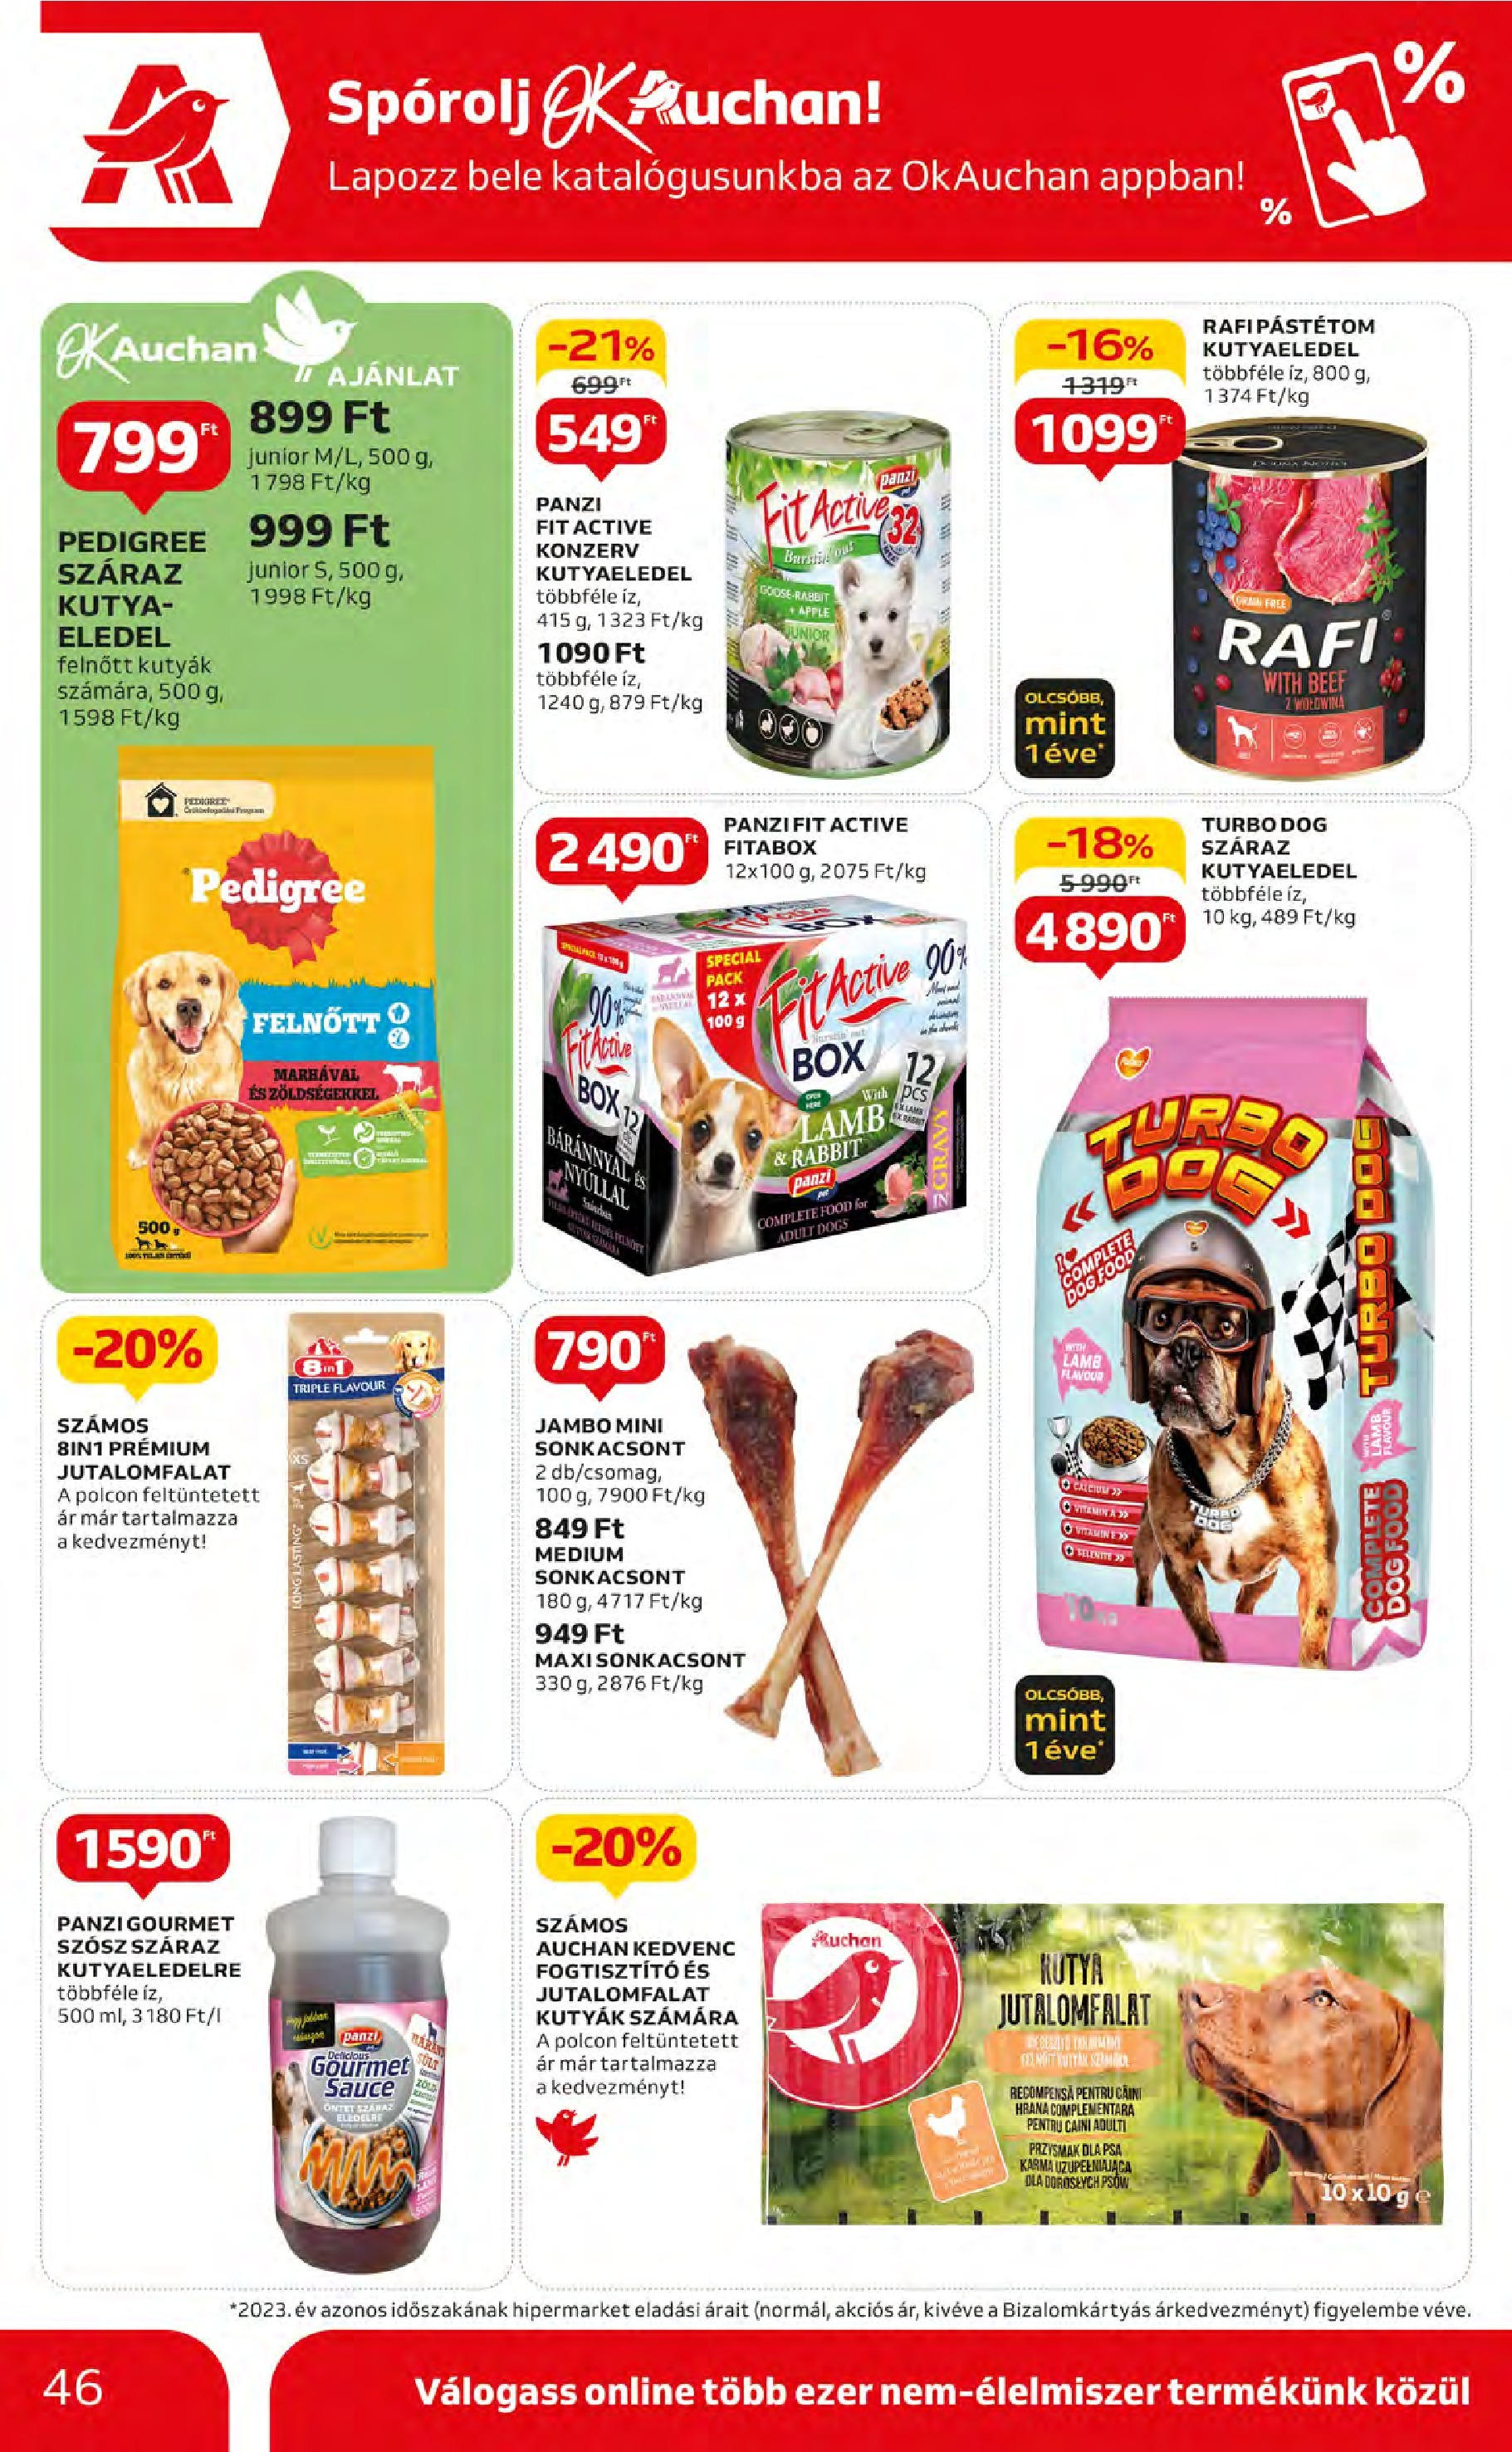 Auchan  Akciós újság - 2024.05.09. -tól/töl > akció, szórólap 🛍️ | Oldal: 46 | Termékek: Kutyaeledel, Szósz